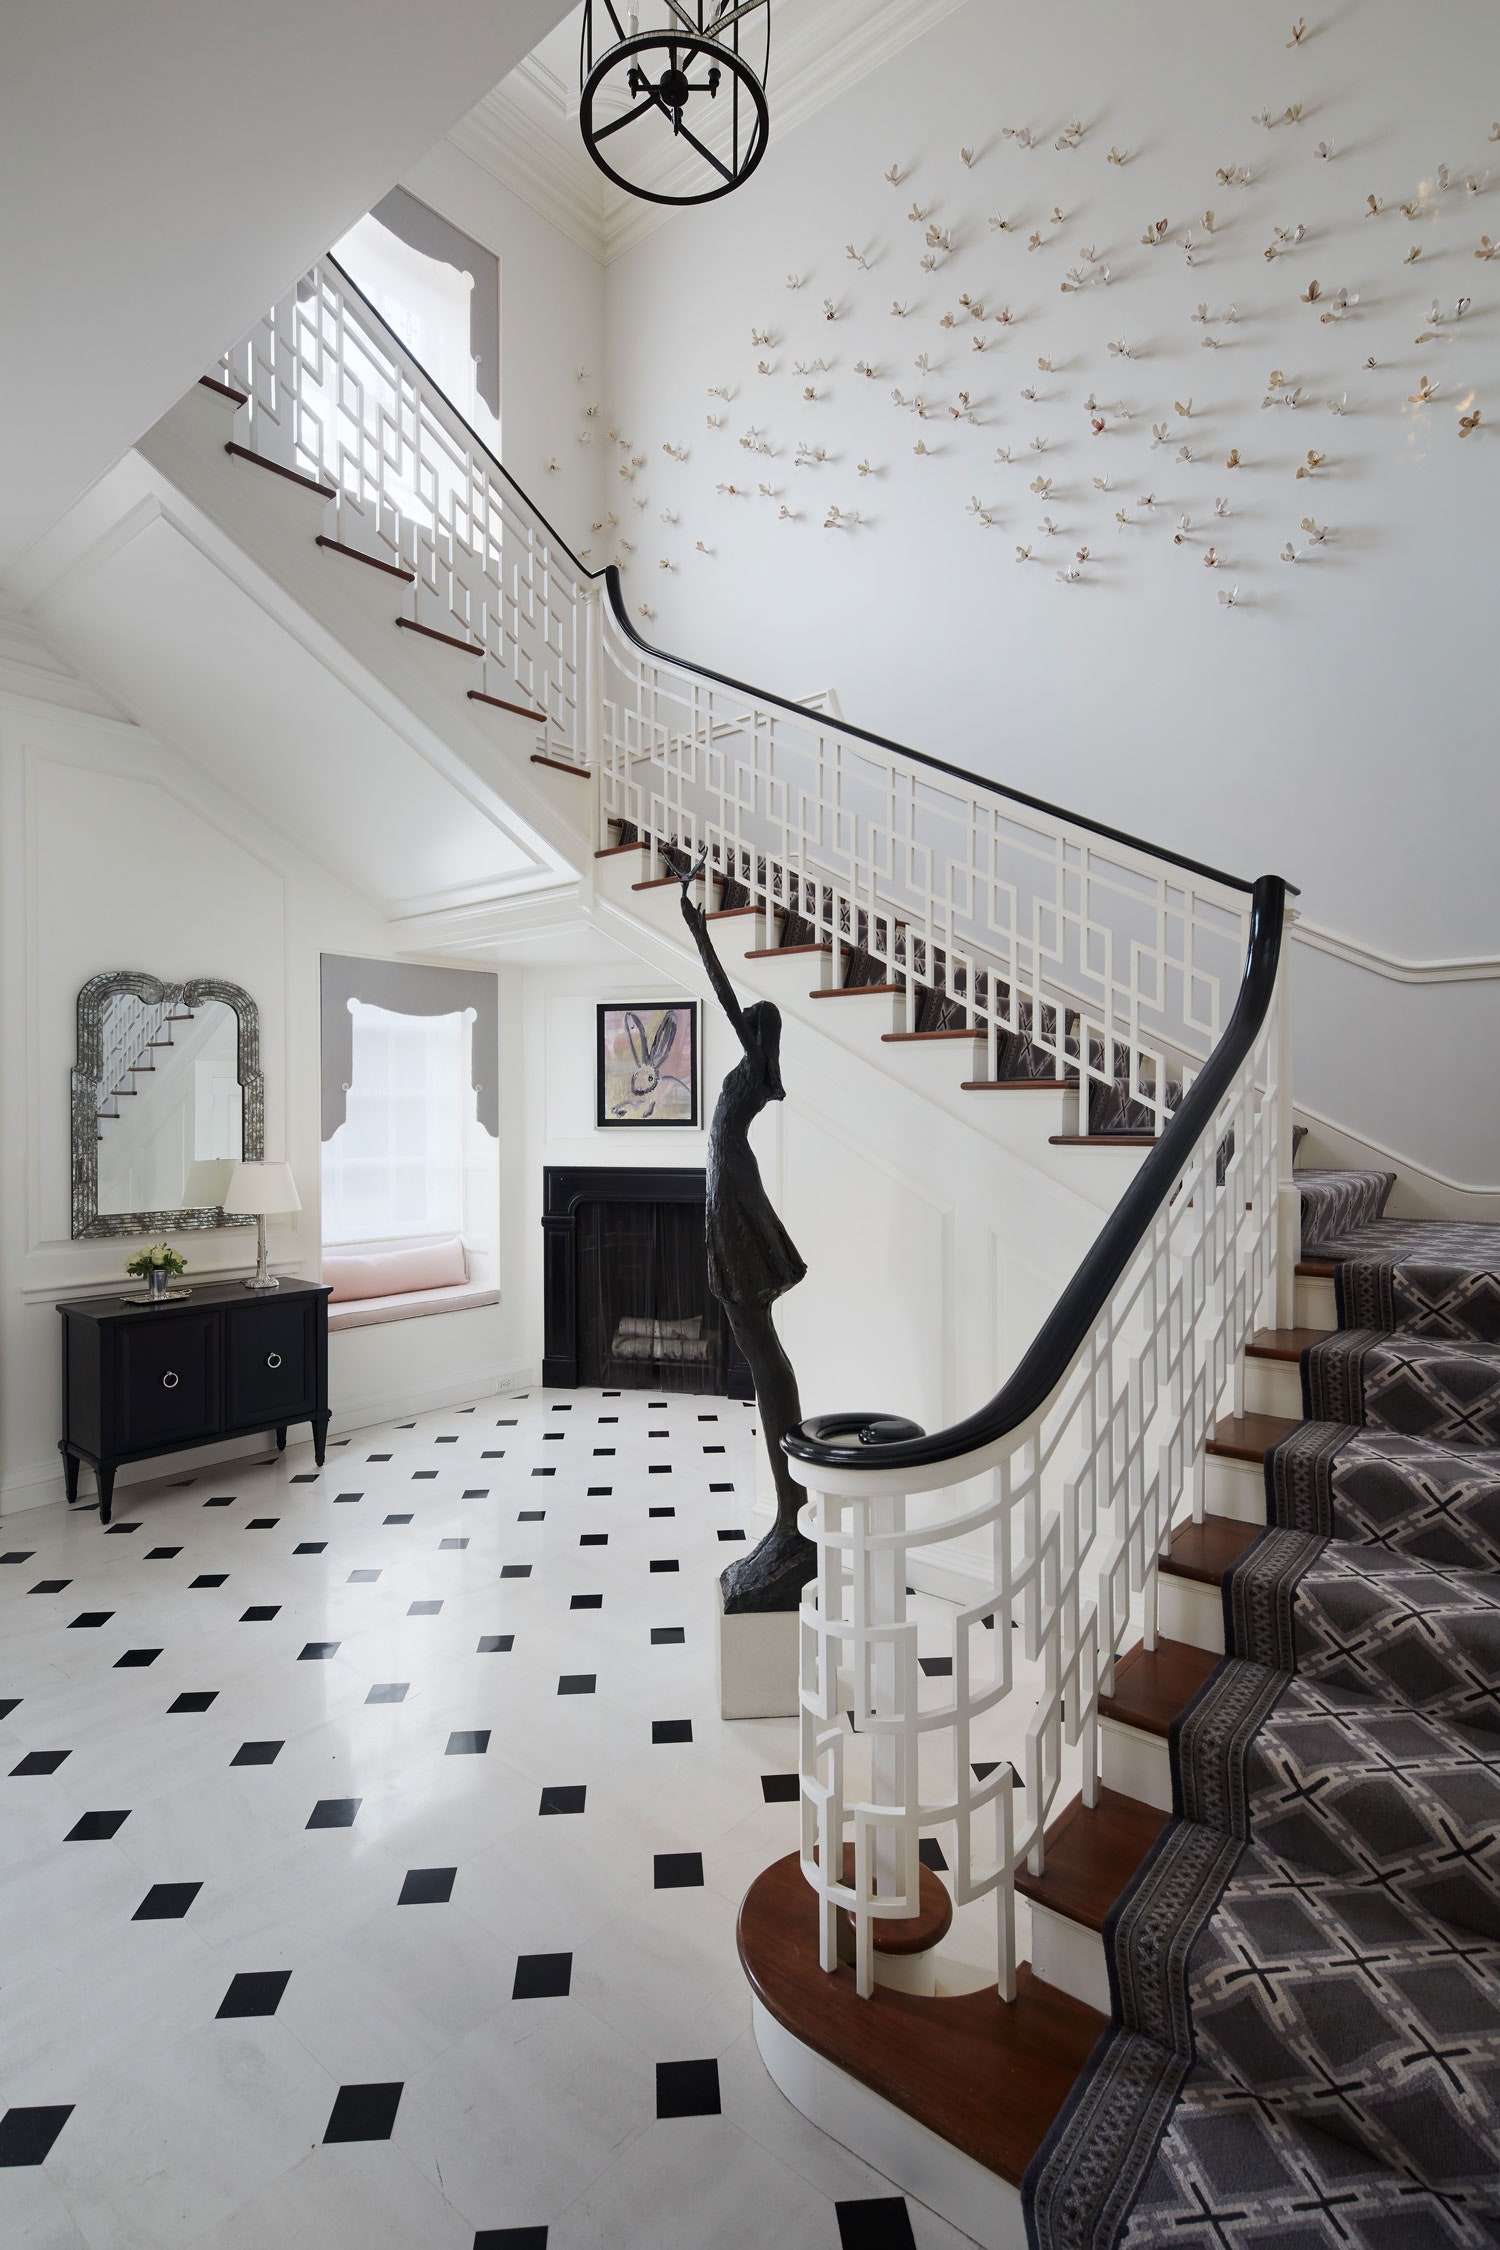 Giữa gạch lát sàn và hoa văn của thảm trải cầu thang có một sự đồng điệu nhất định cho cái nhìn hài hòa đẹp mắt.